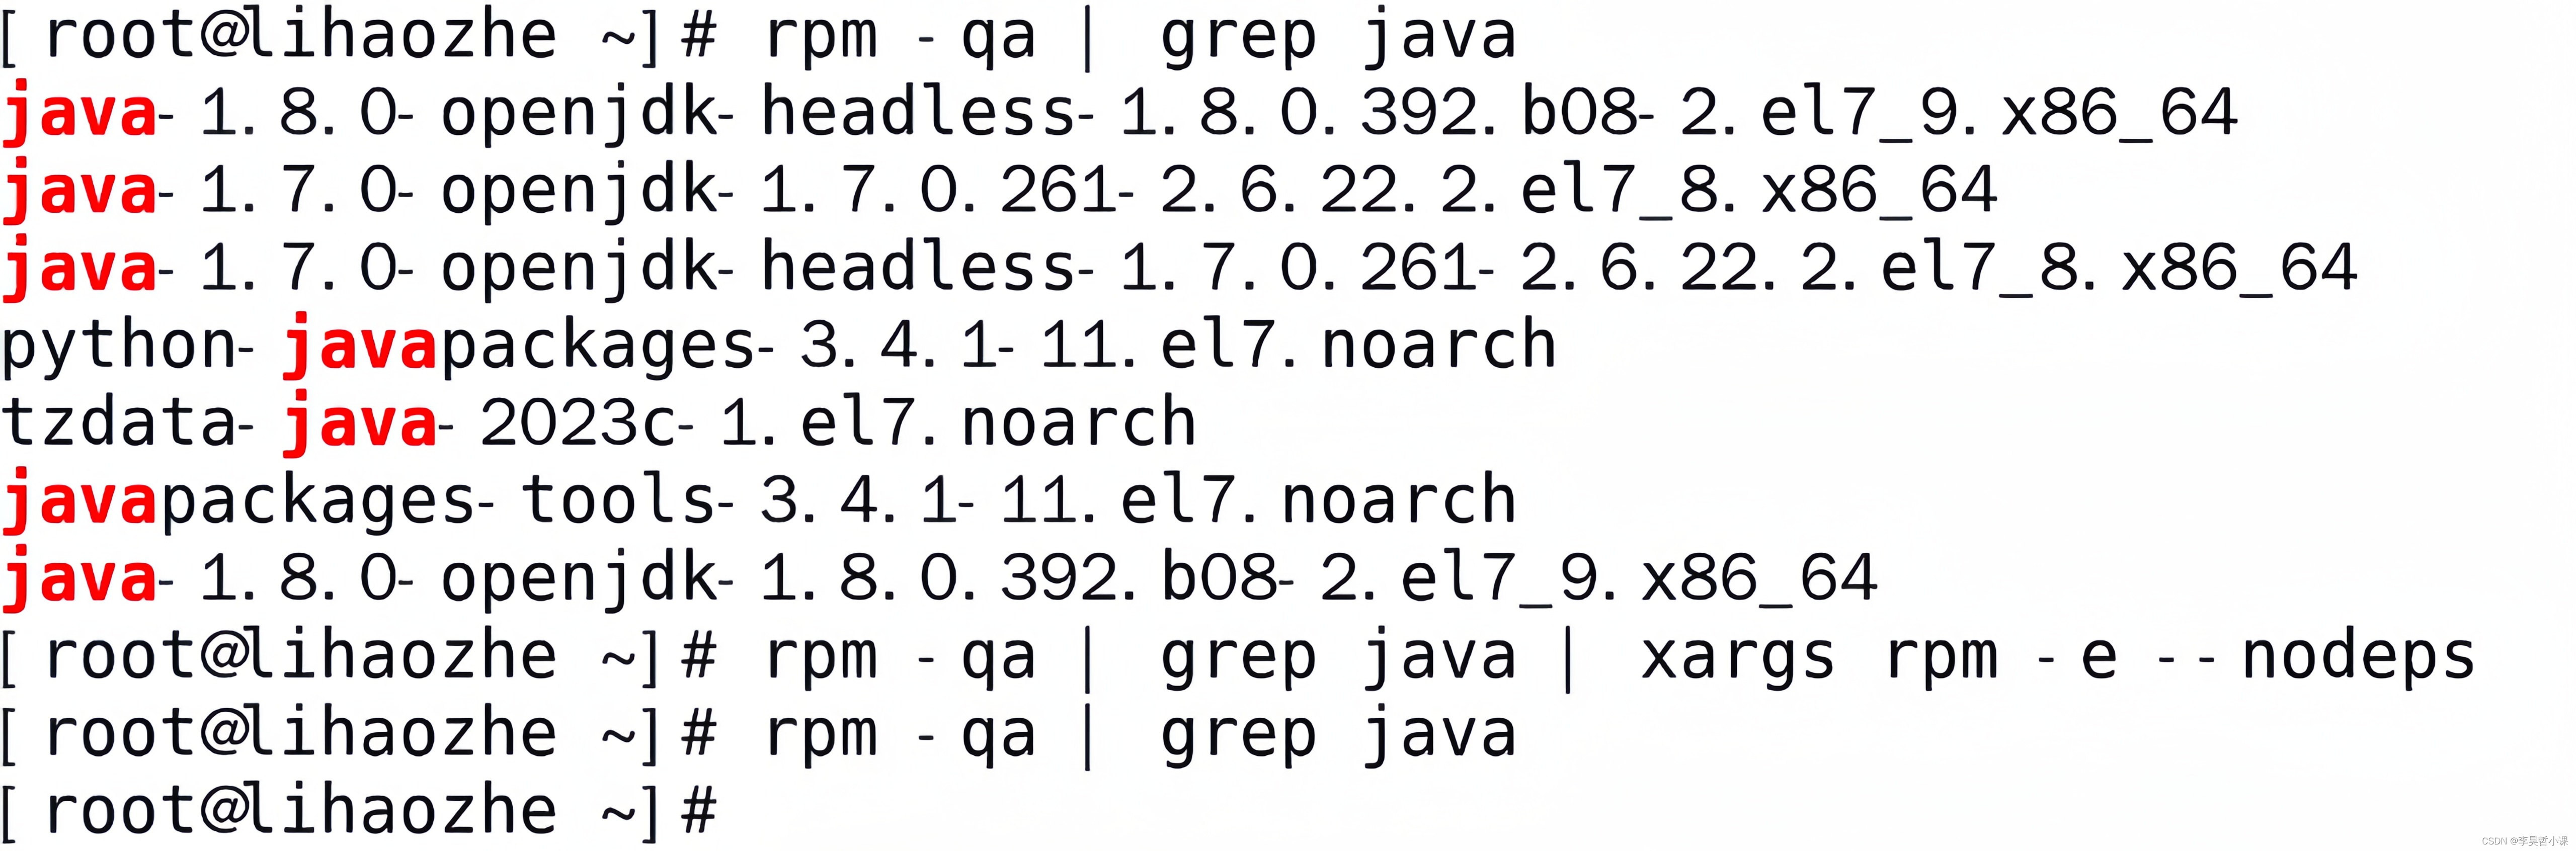 一条命令彻底卸载Linux自带多个版本jdk